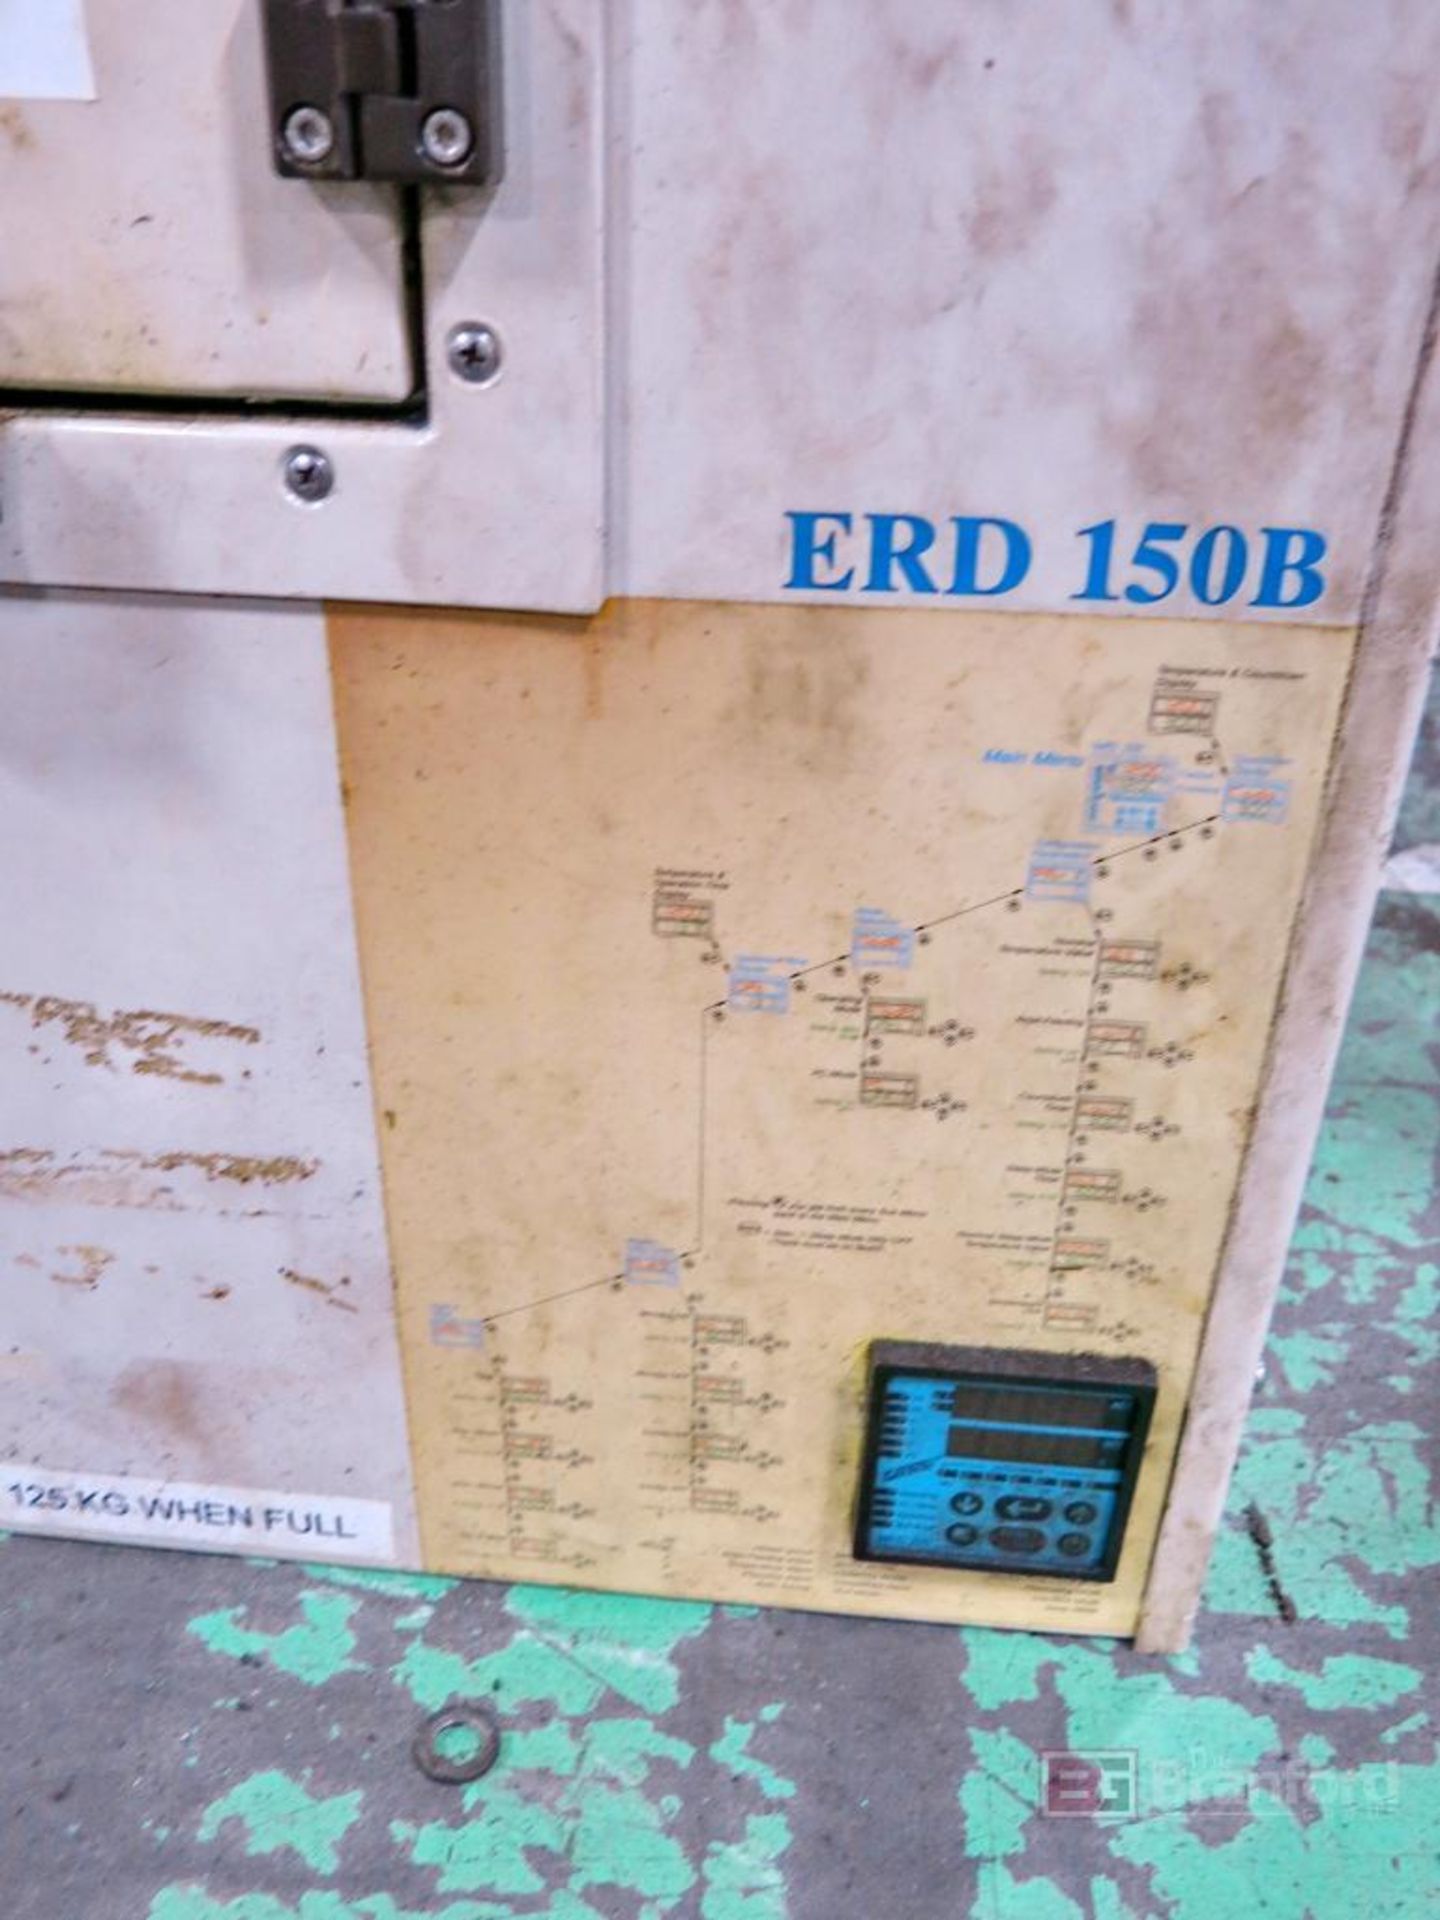 Fasti Model ERD150B Resin Material Dryer - Image 2 of 2